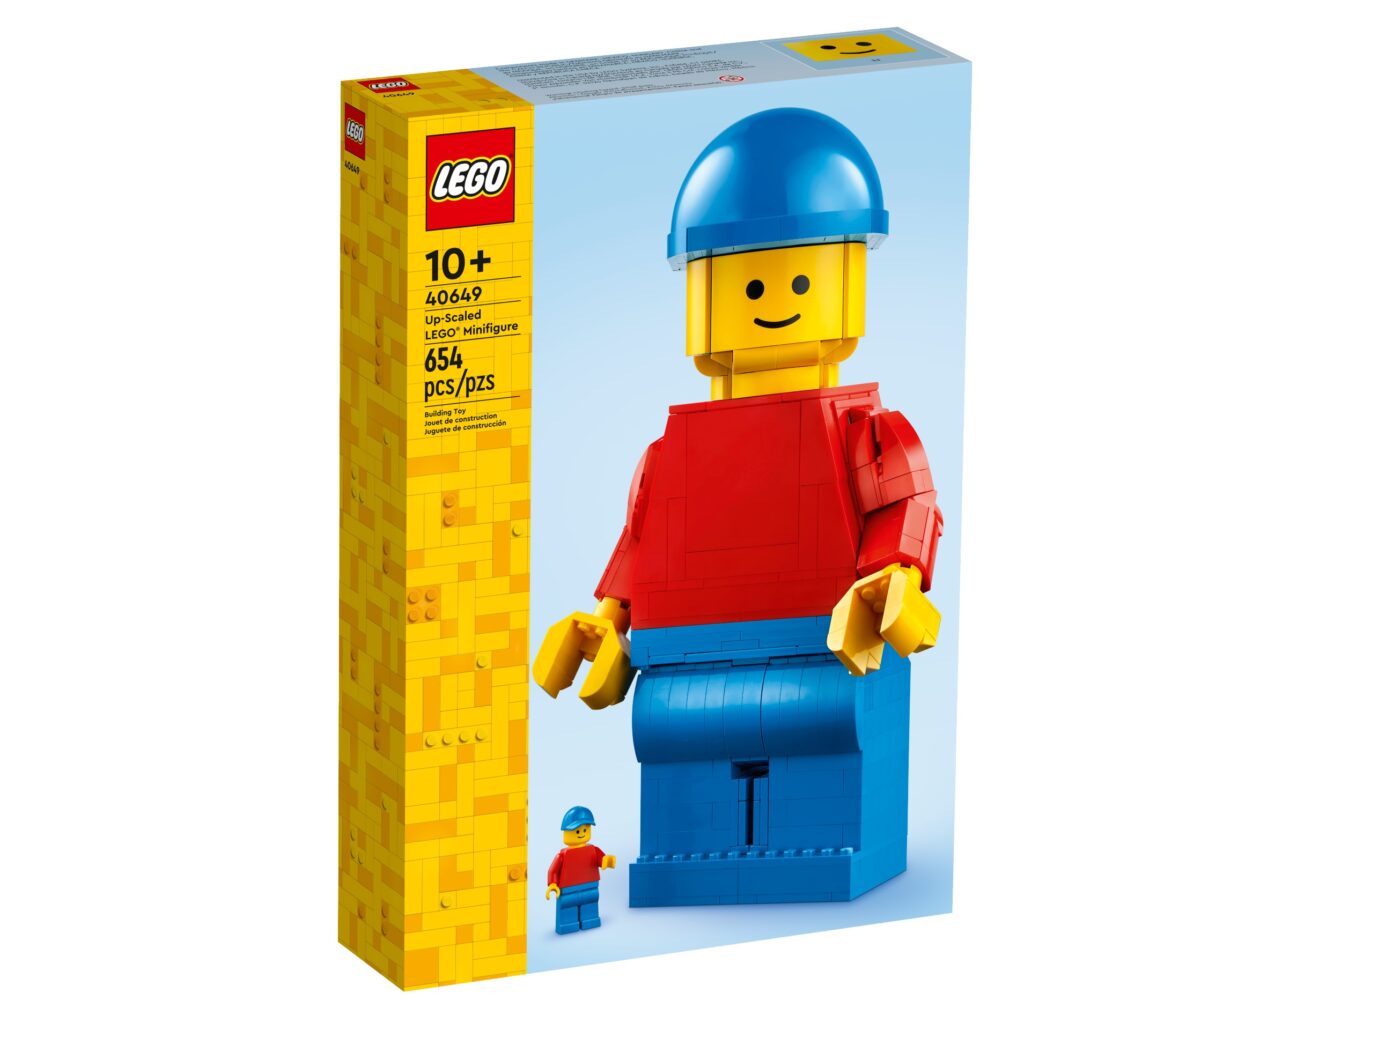 LEGO-Up-Scaled-LEGO-Minifigure-40649